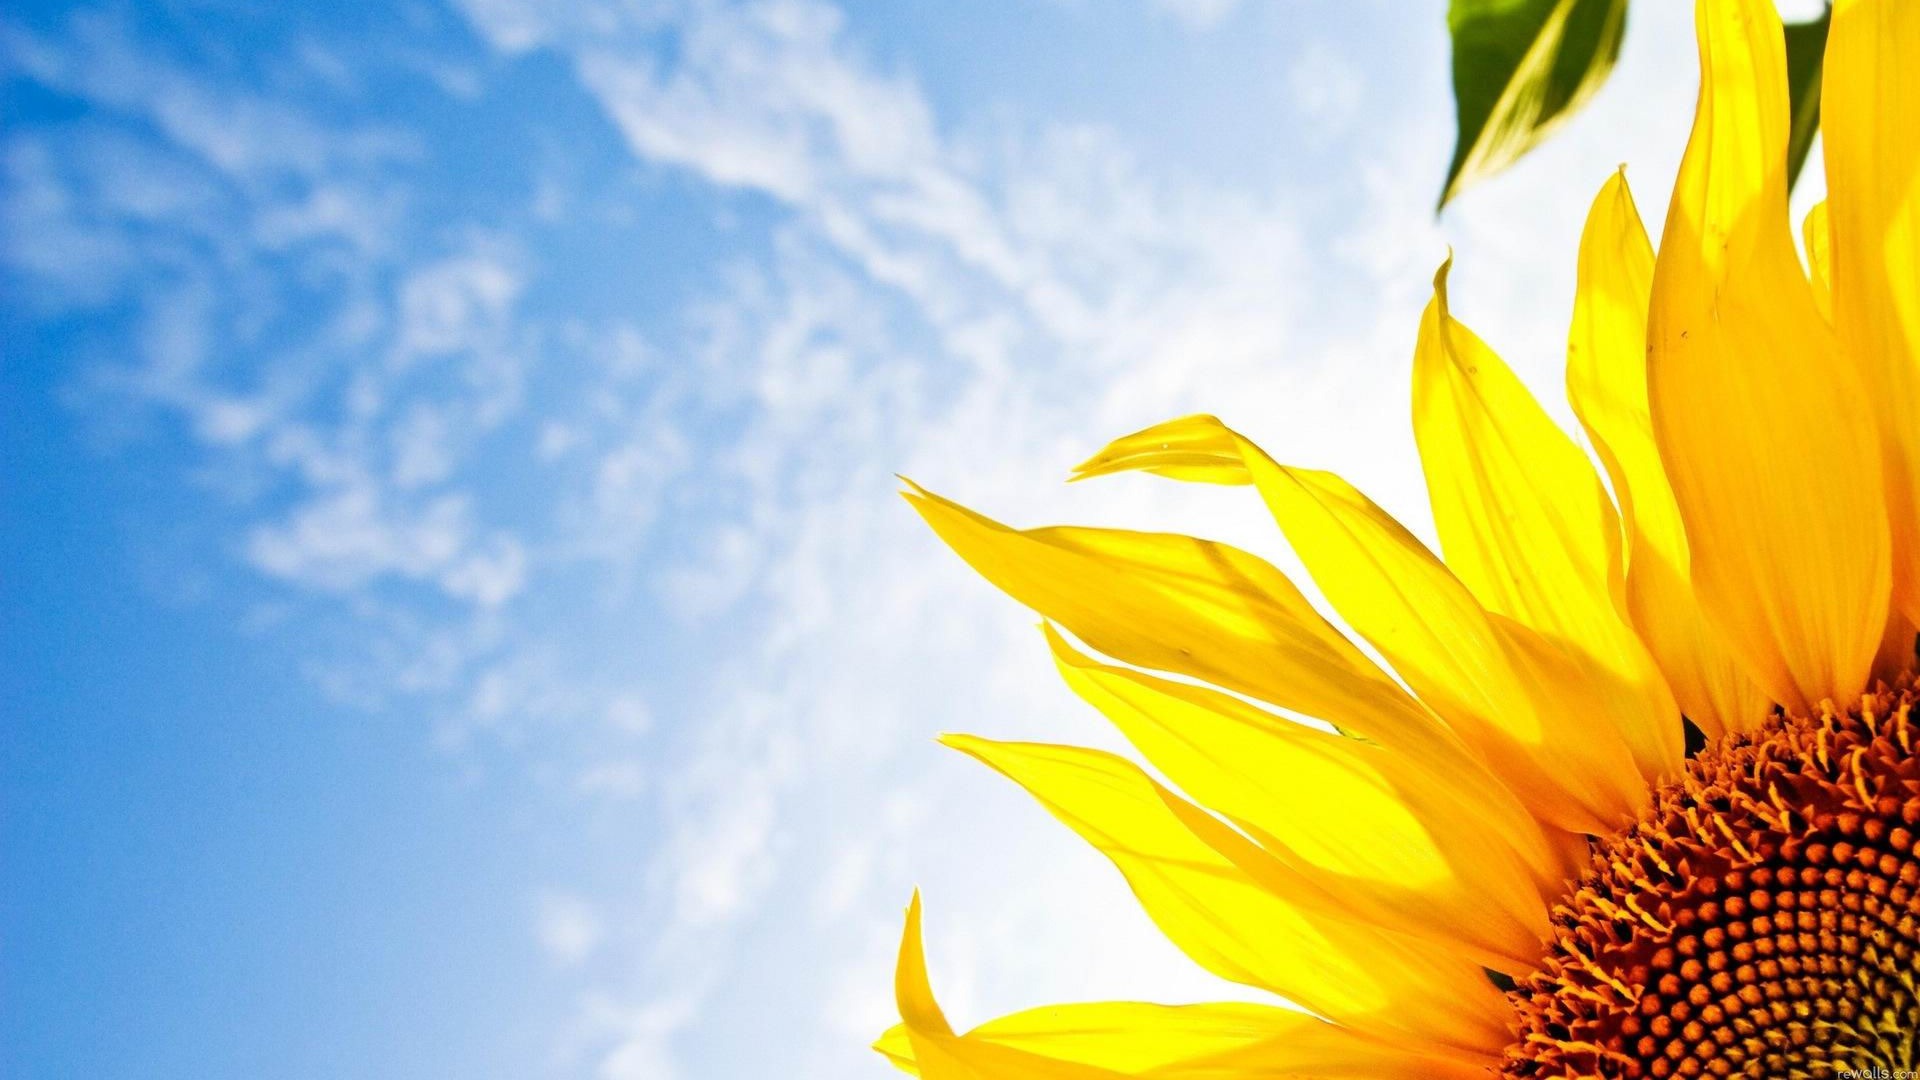 Sunflower Close Up Desktop Wallpaper Full HD